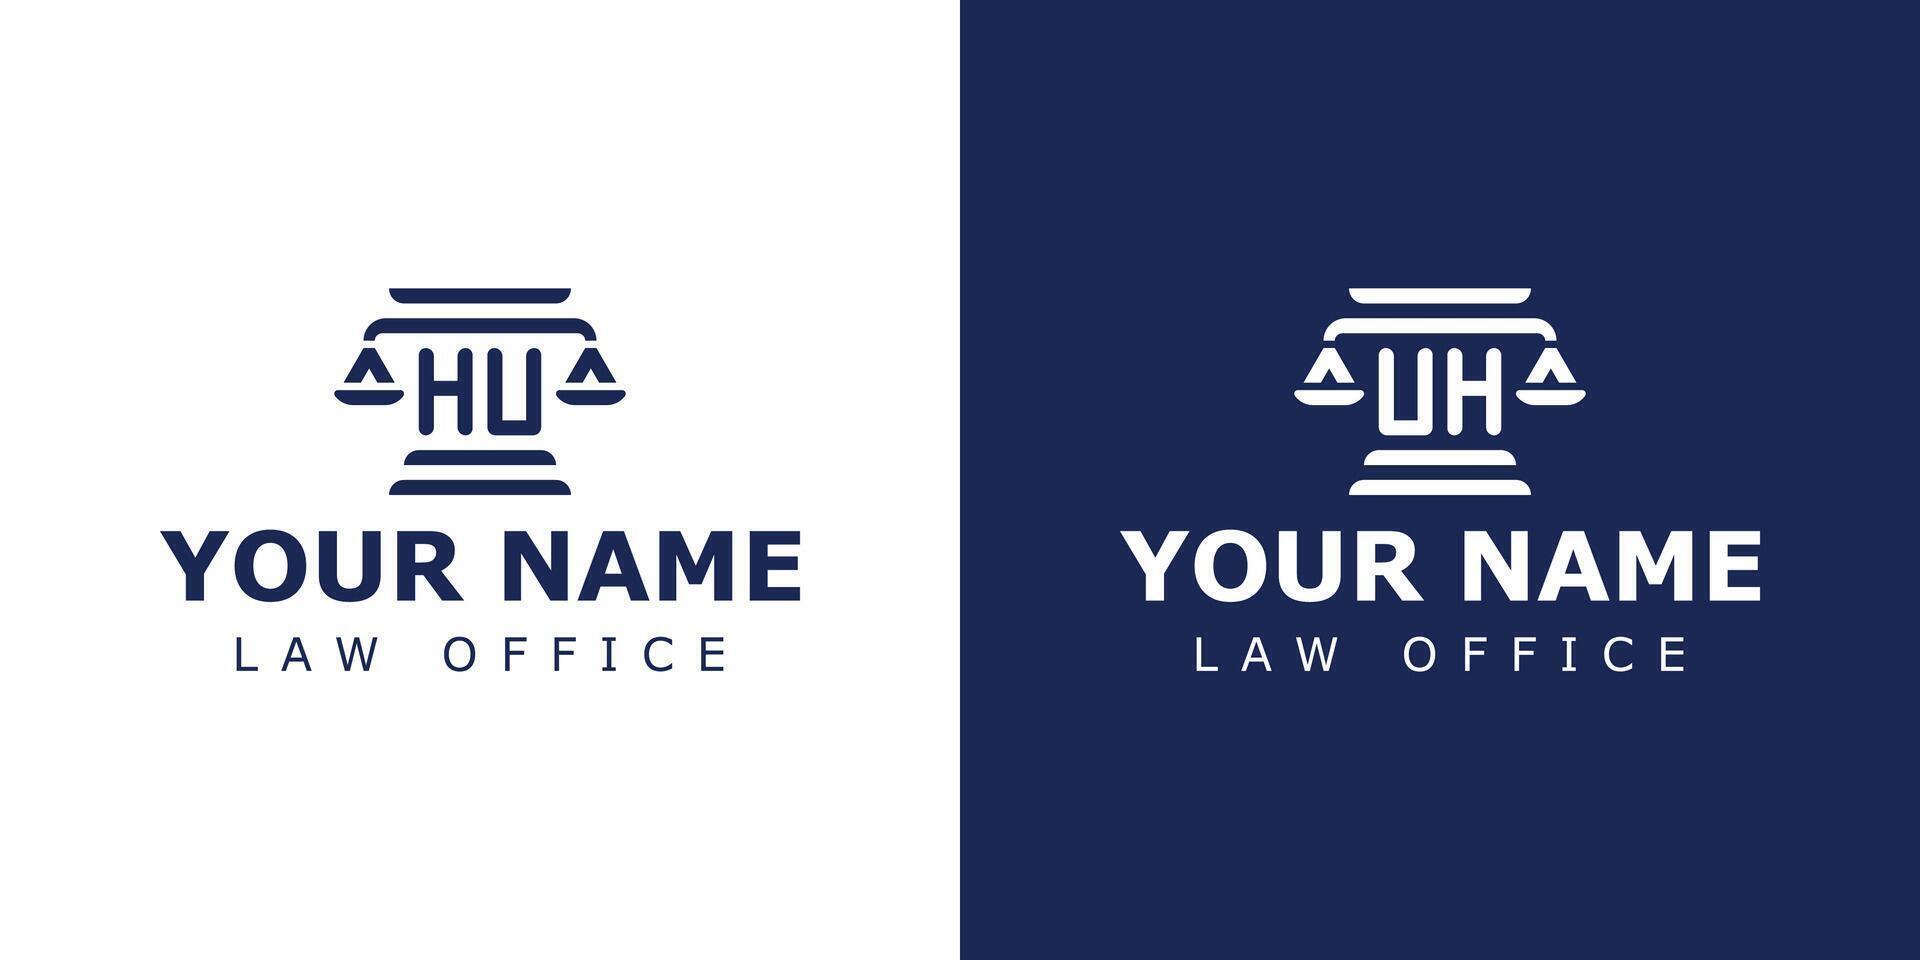 carta hu e Uh legal logotipo, adequado para advogado, jurídico, ou justiça com hu ou Uh iniciais vetor